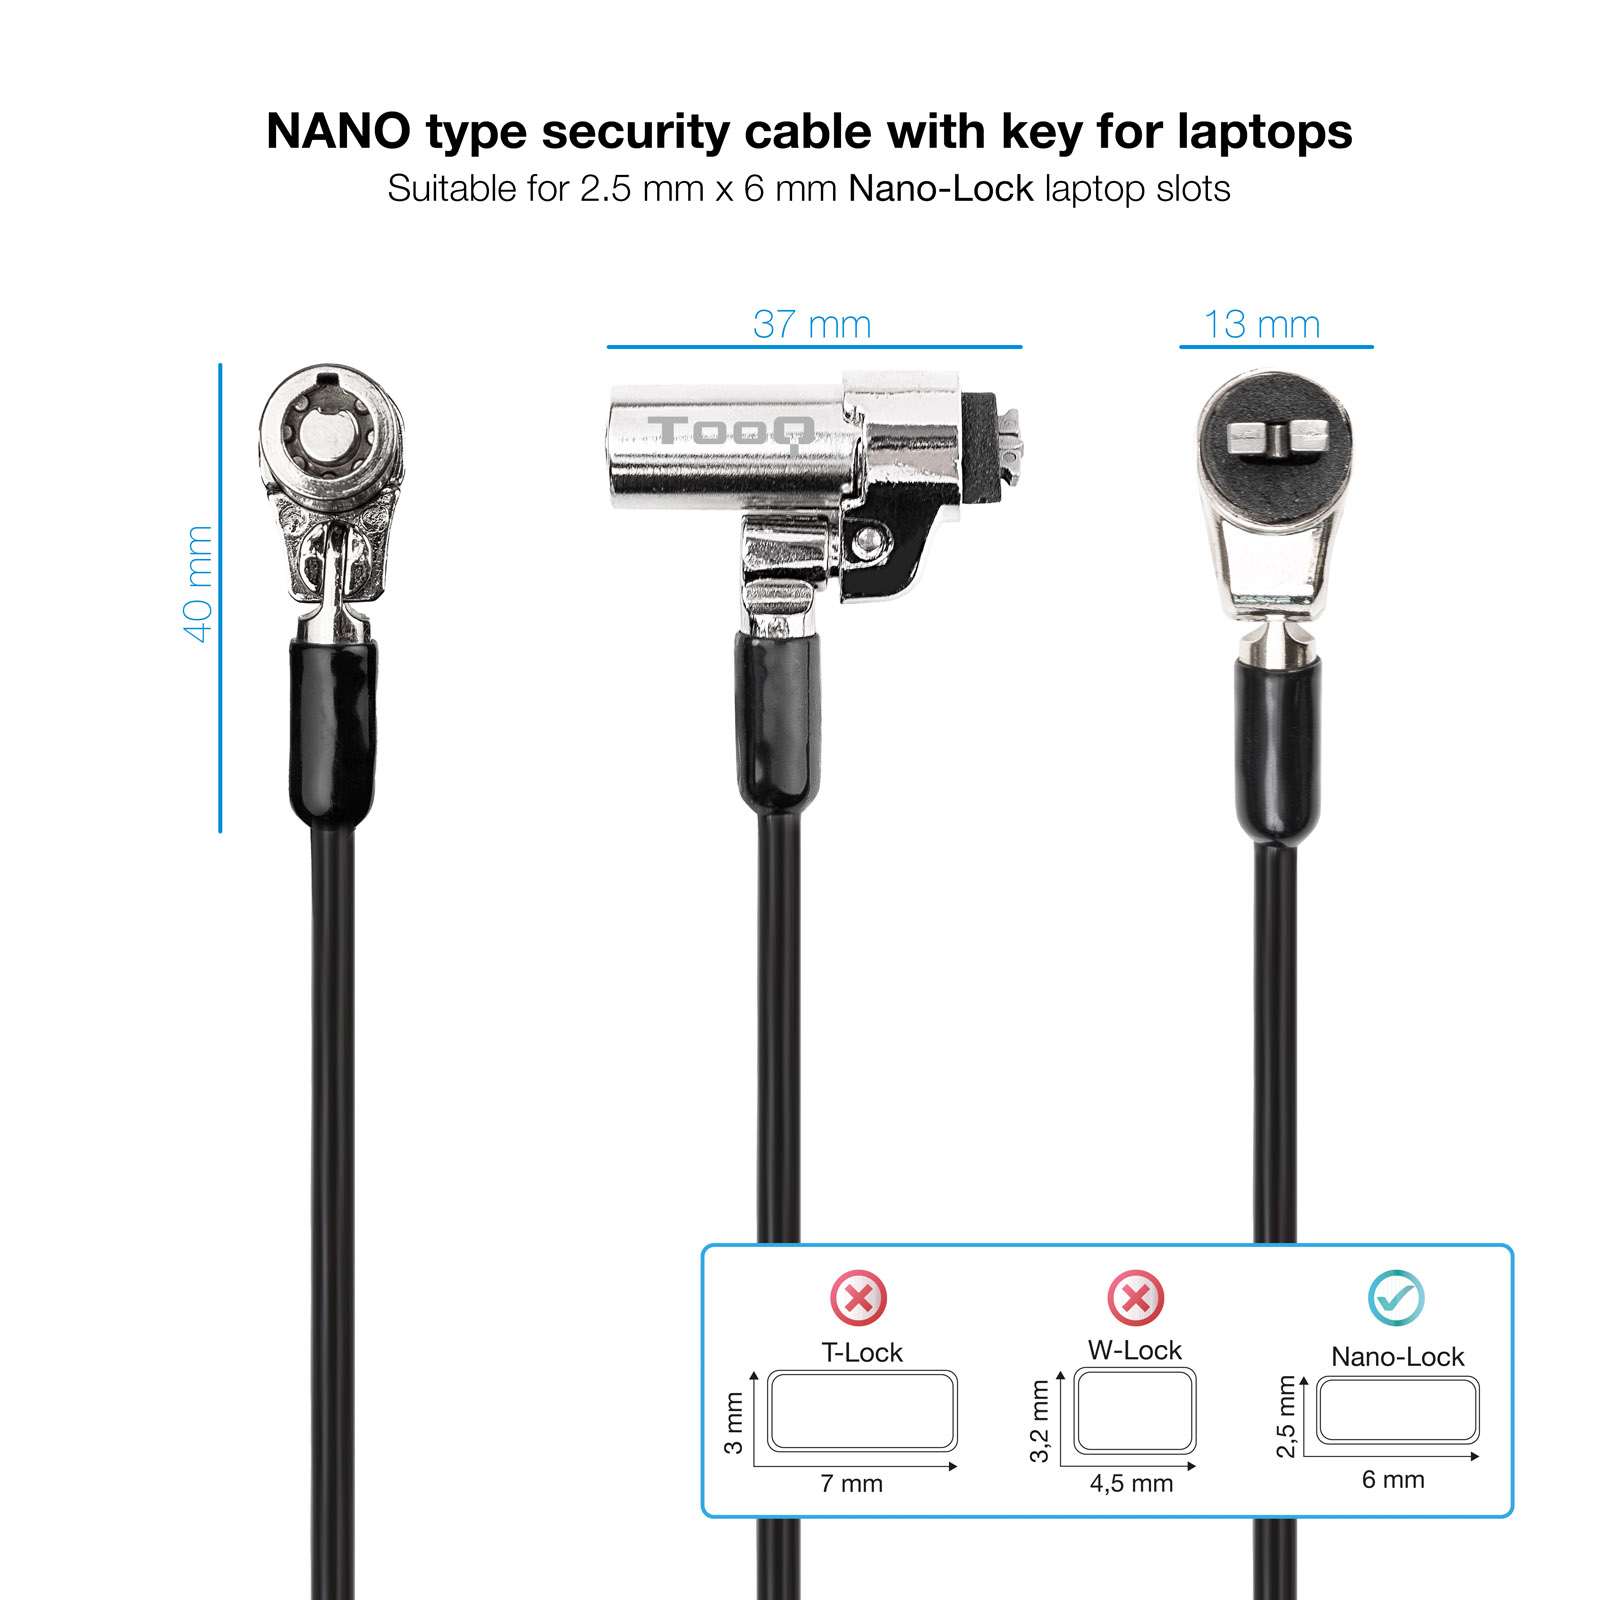 Tooq Nano Câble de Sécurité Clé 2,5x6mm pour Ordinateurs Portables - Couleur Grise